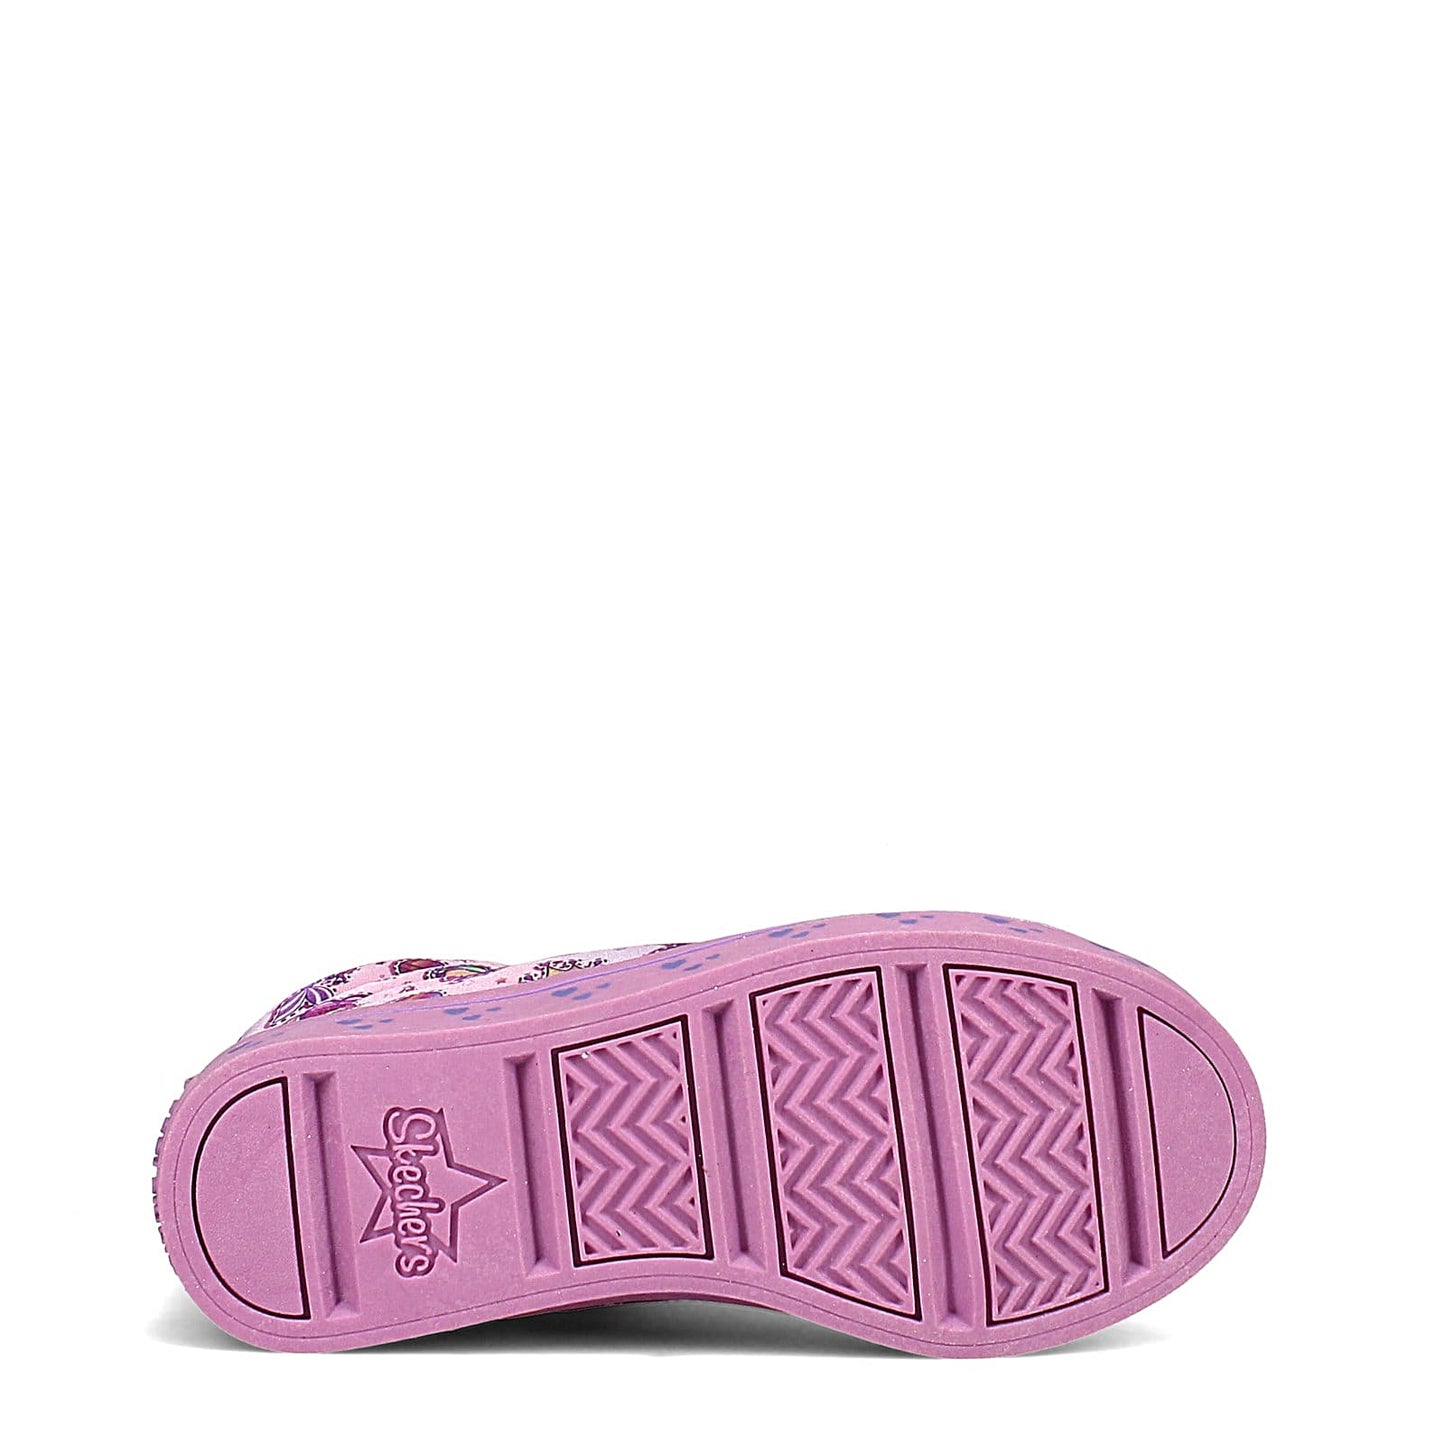 Peltz Shoes  Girl's Skechers S Lights: Twi-Lites - Mermaid Party Sneaker - Little Kid